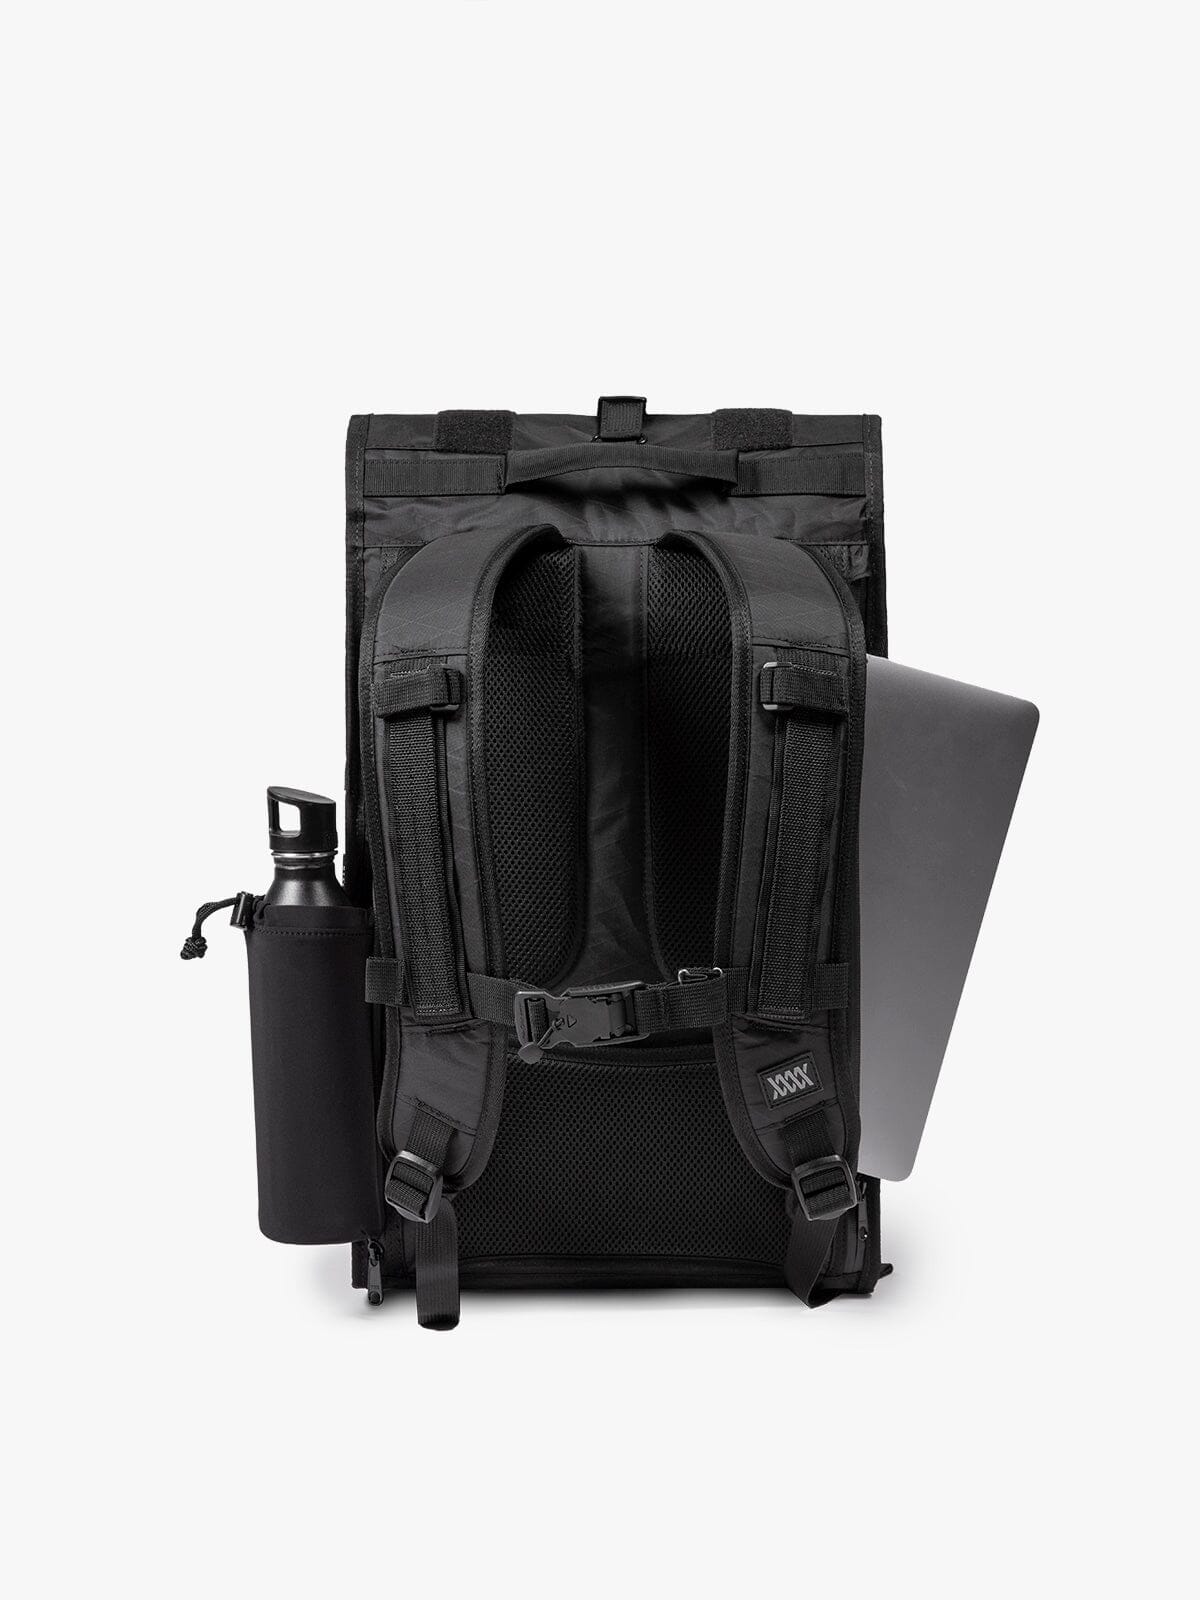 Rhake Weatherproof Laptop Backpack Black Camo